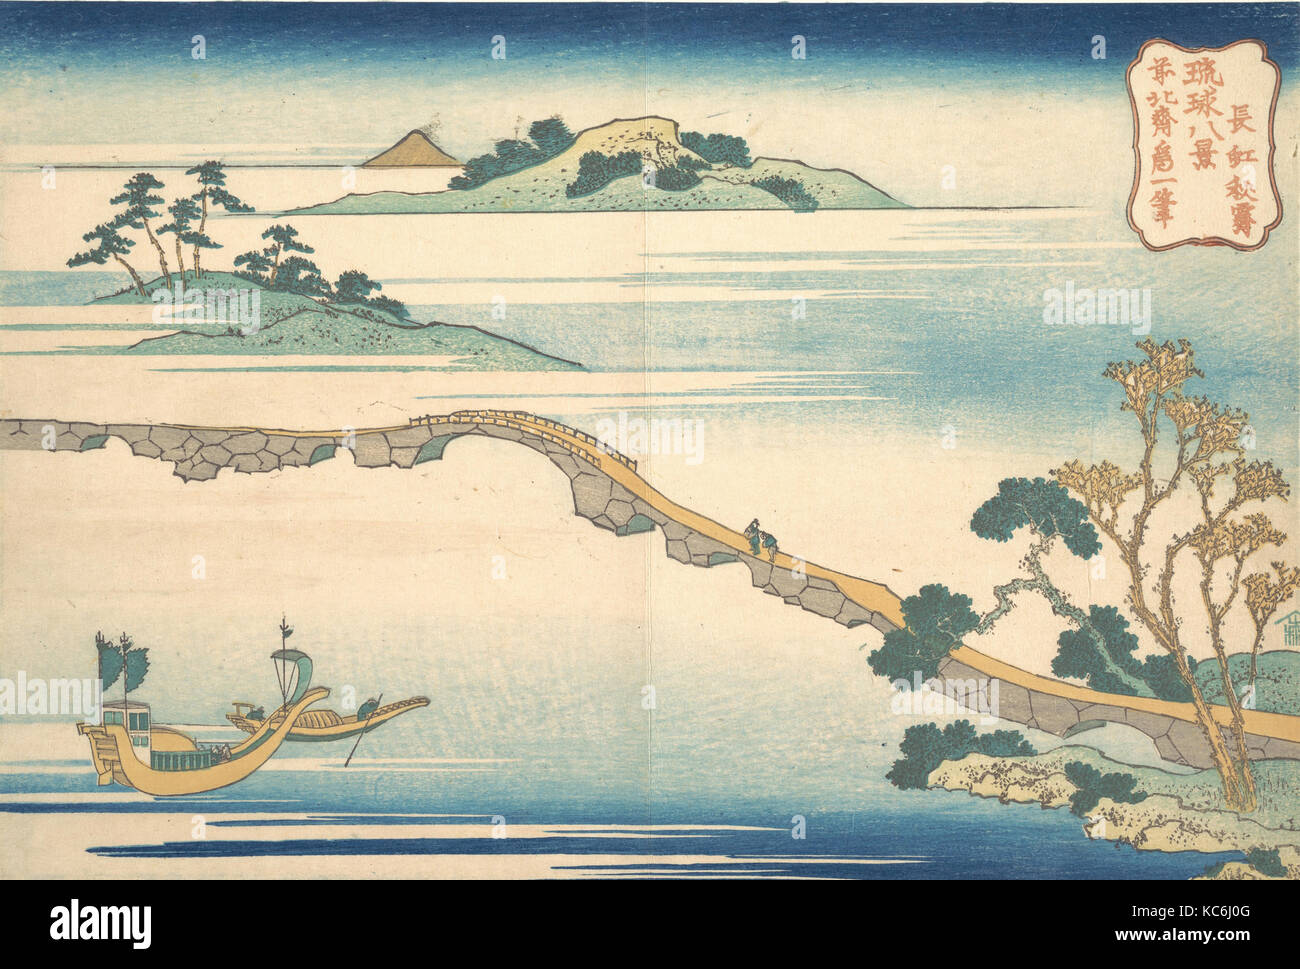 琉球八景 長虹秋霽, Herbst Himmel bei Chōkō (Chōkō shūsei), aus der serie Acht Ansichten der Ryūkyū-Inseln (Ryūkyū hakkei), Katsushika Stockfoto